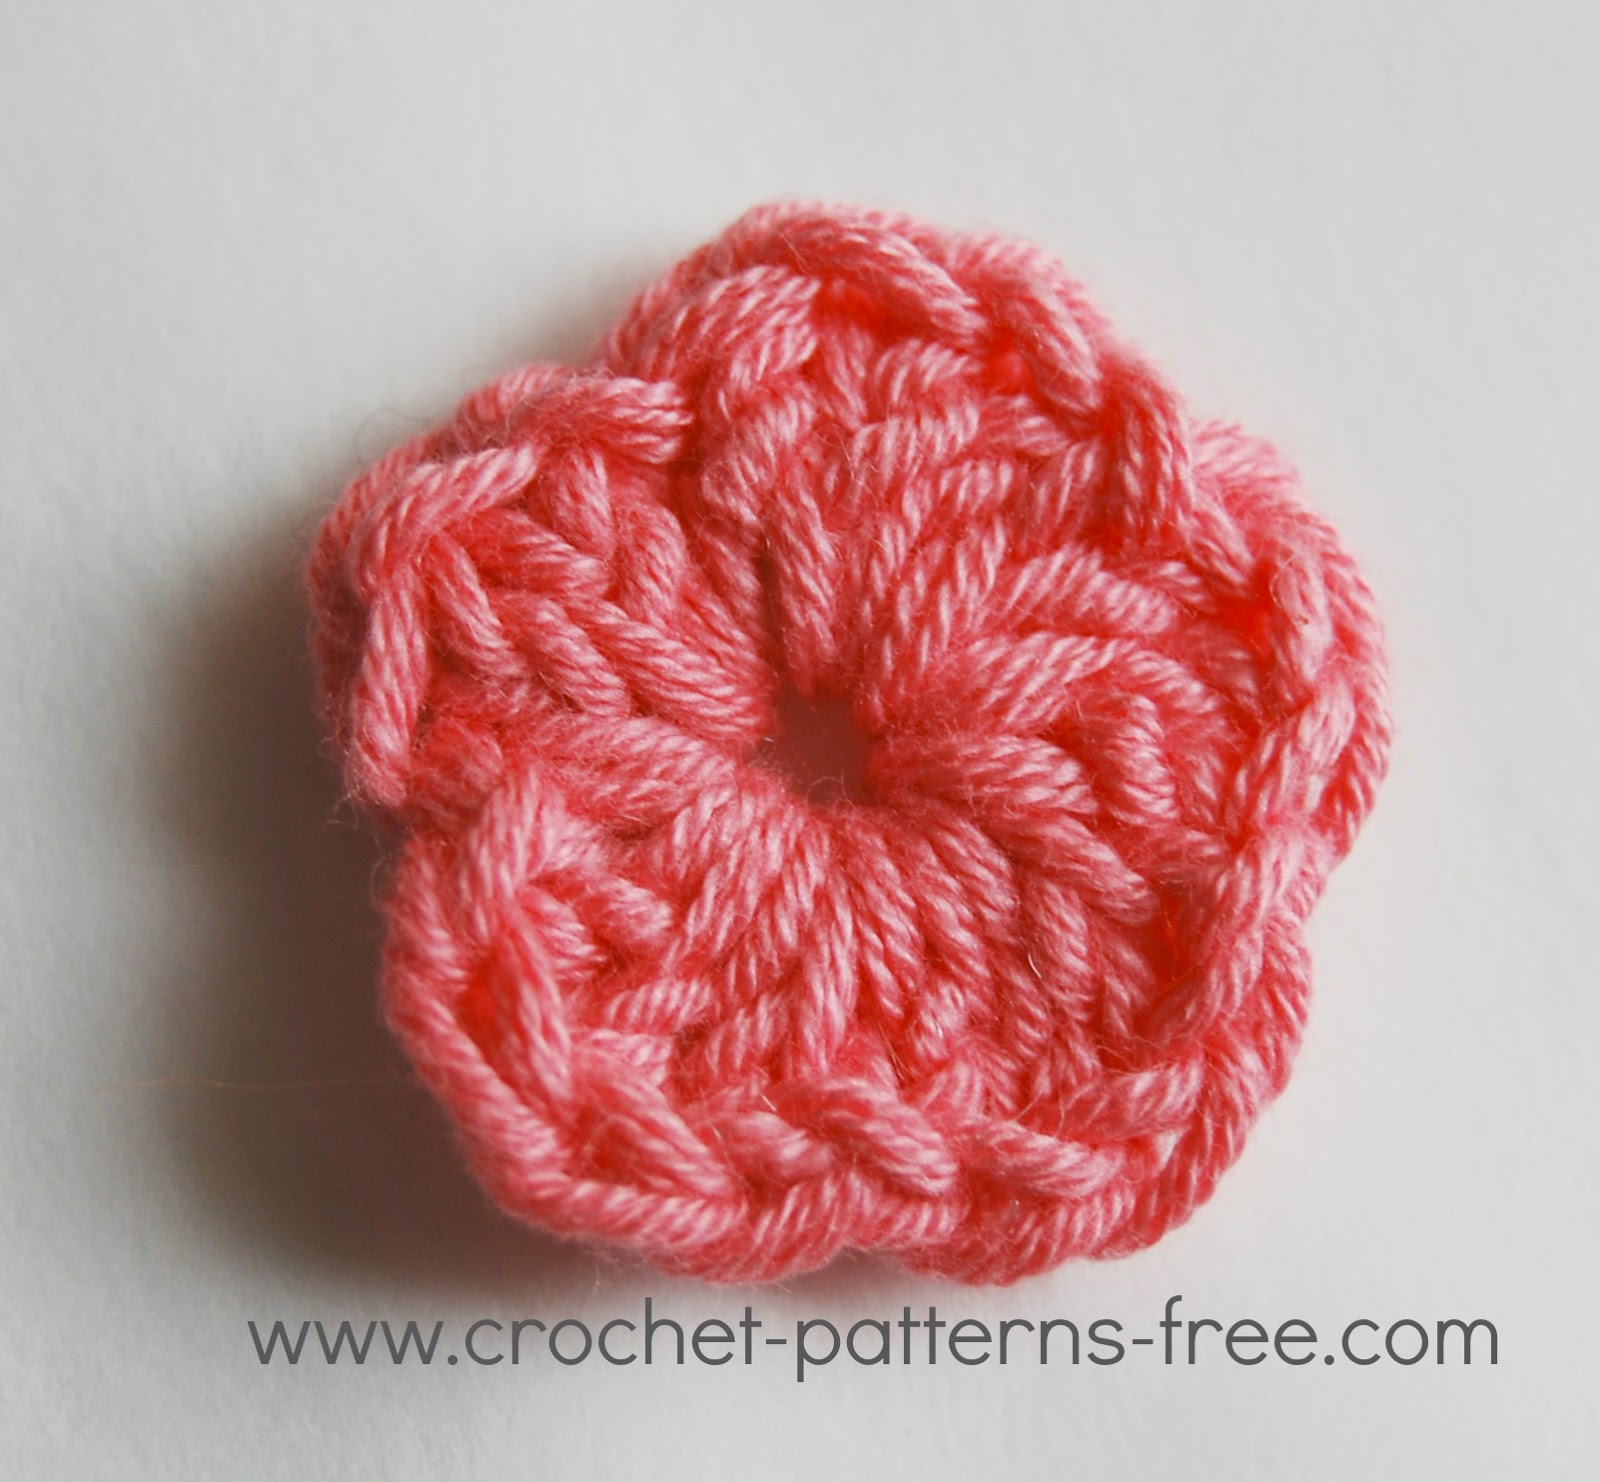 Small Crochet Flower Pattern Free Crochet Patterns And Designs Lisaauch Small Crochet Flower